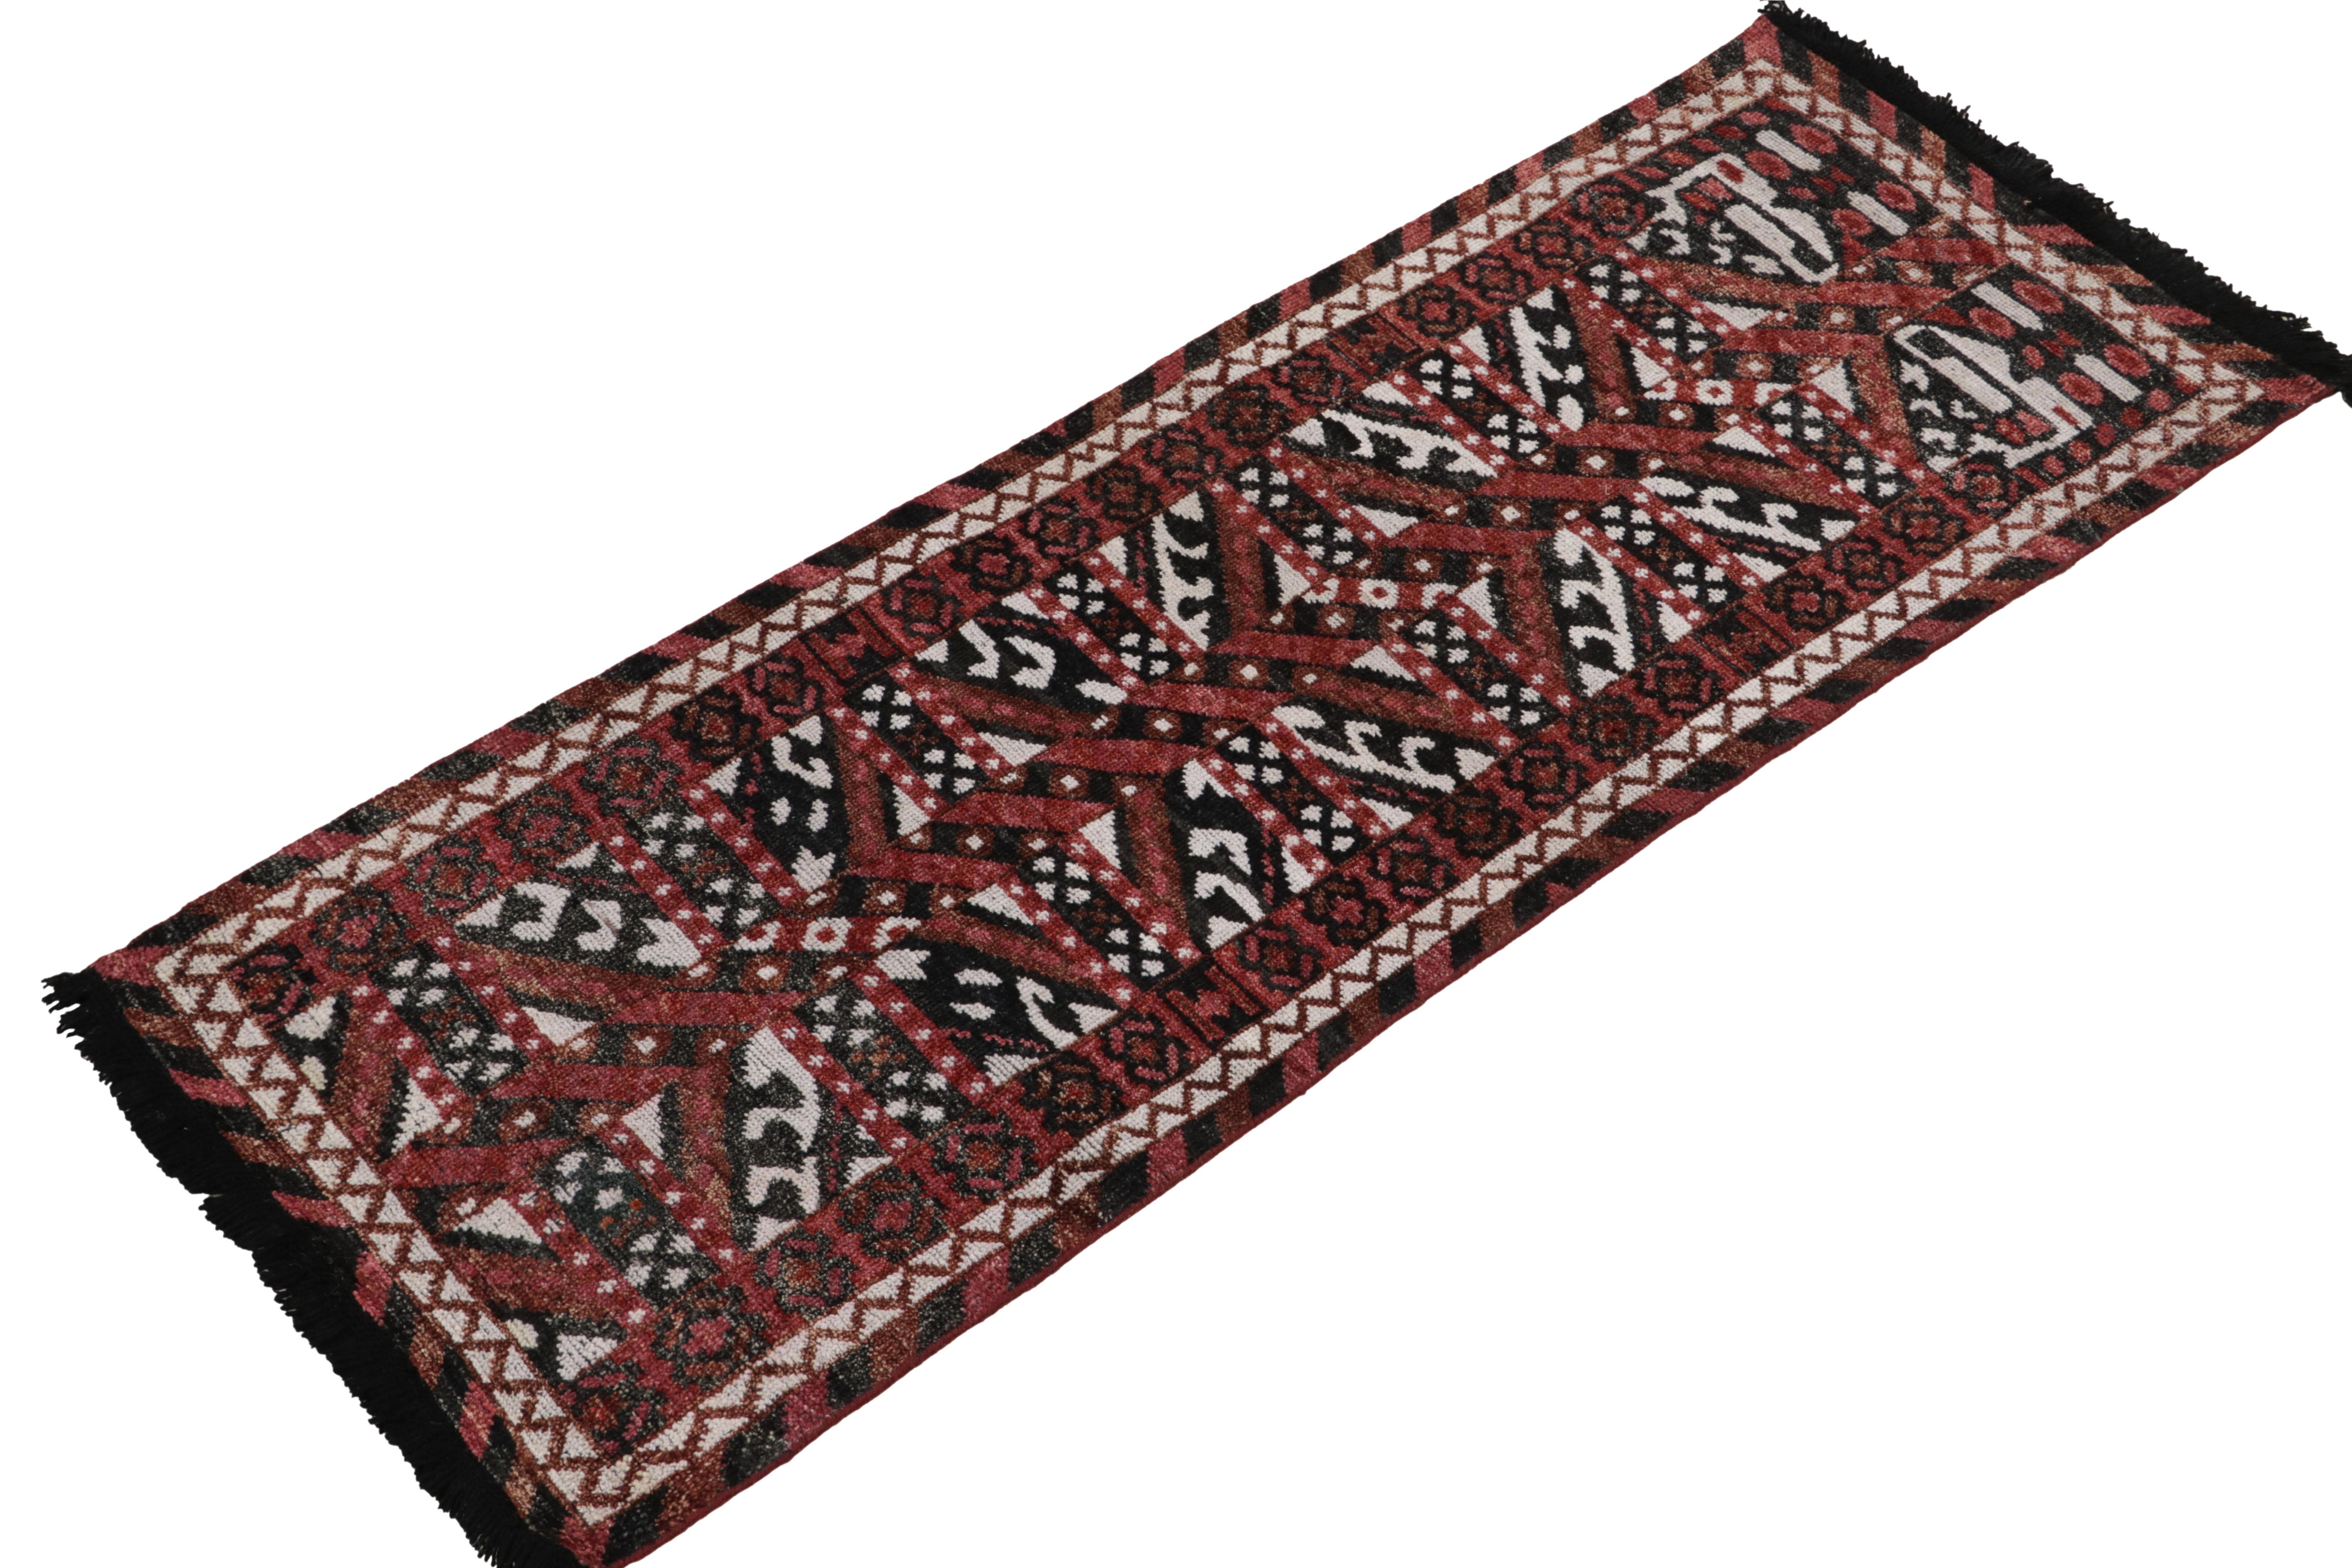 Indien Tapis & Kilim's Tribal Style Runner in Red, Black and White Geometric Pattern (Tapis de style tribal à motifs géométriques rouges, noirs et blancs) en vente